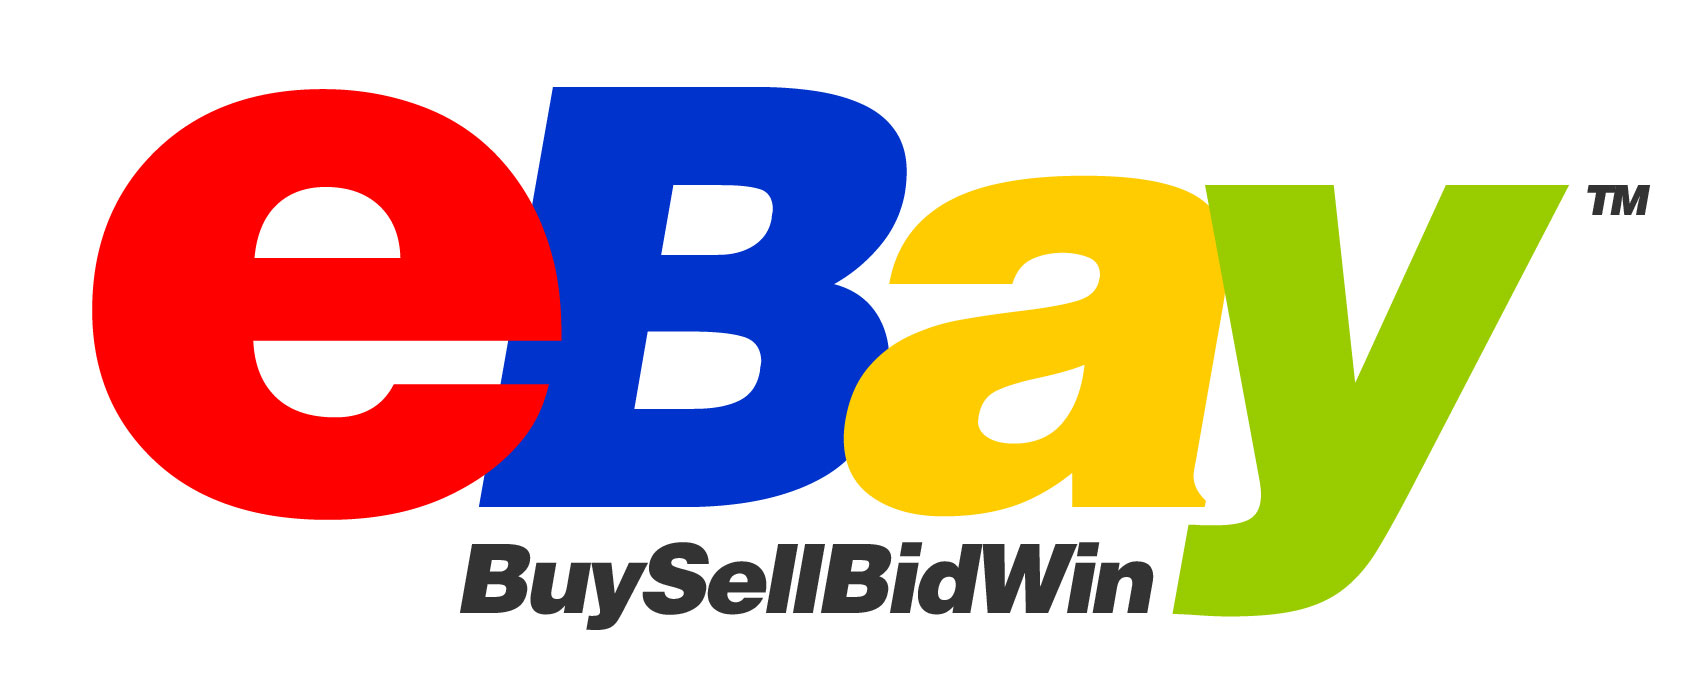 Www Ebay Com Au